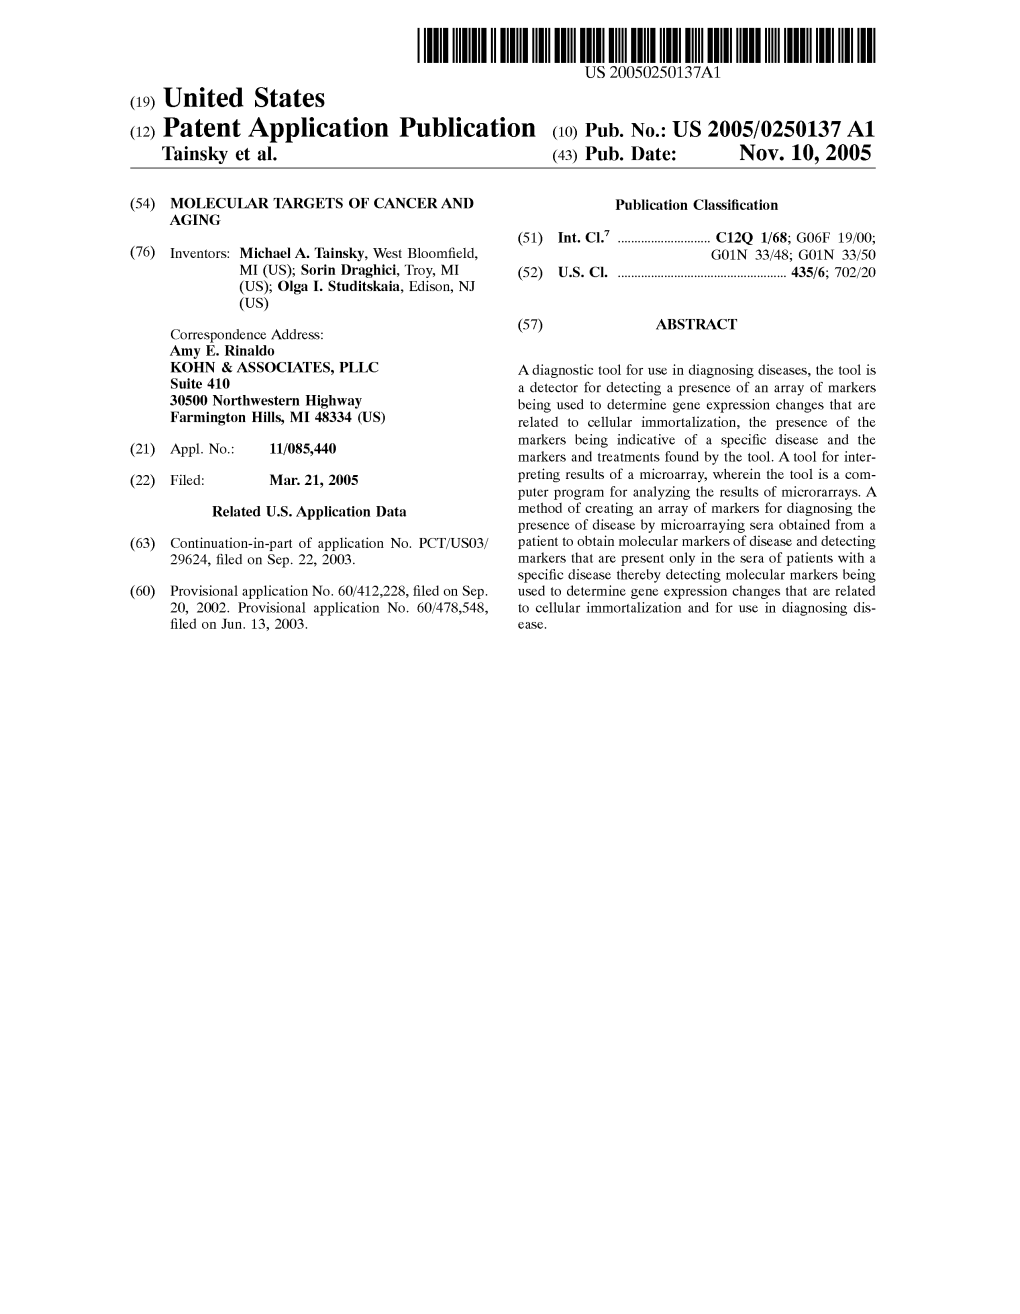 (12) Patent Application Publication (10) Pub. No.: US 2005/0250137 A1 Tainsky Et Al